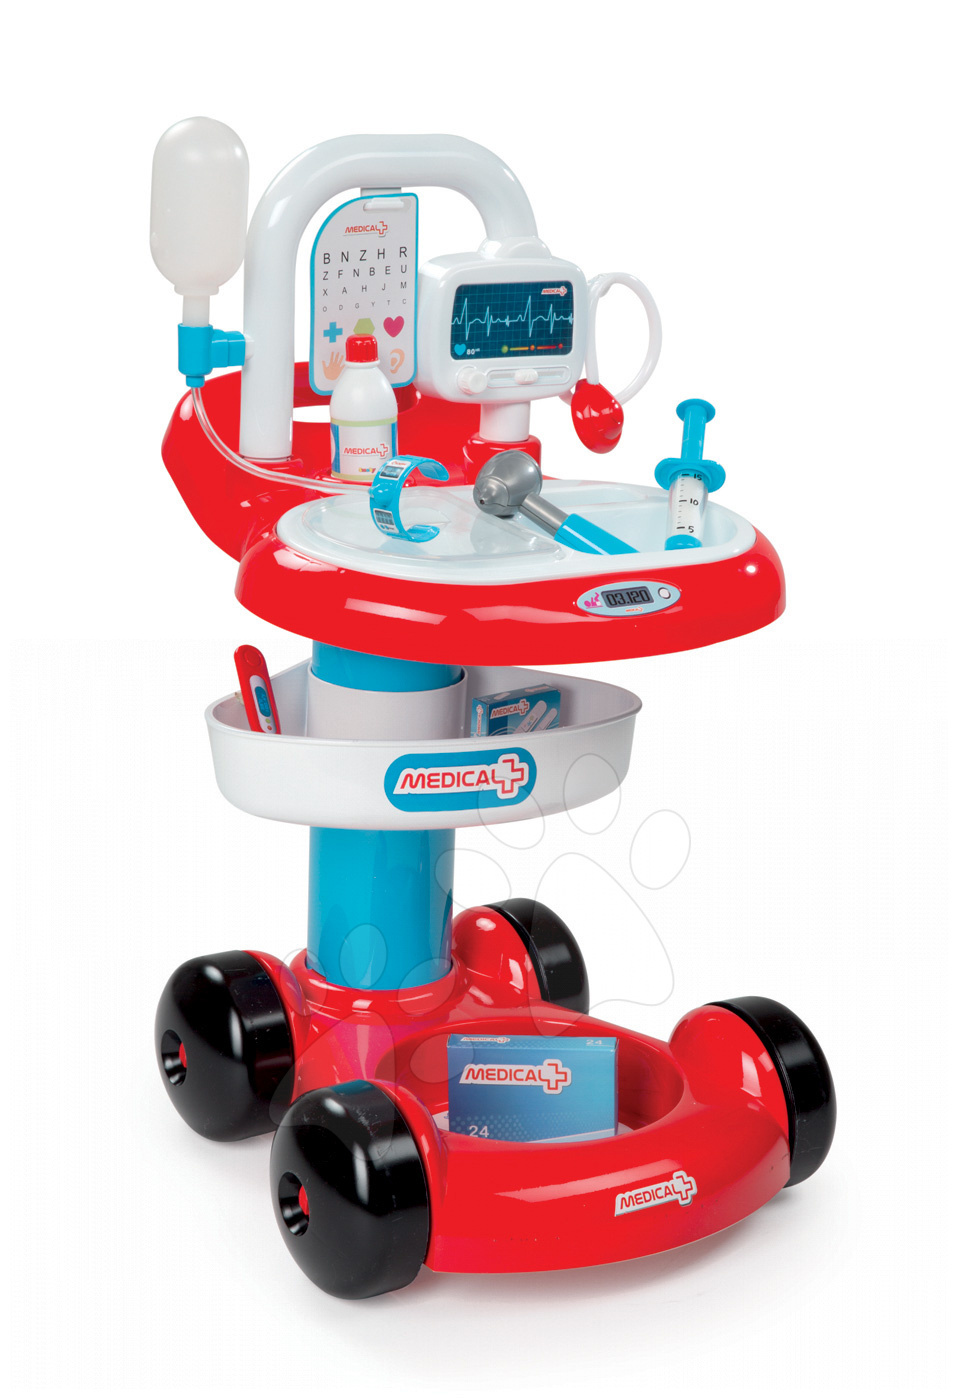 Smoby lekársky vozík pre deti 24422 červeno-biely